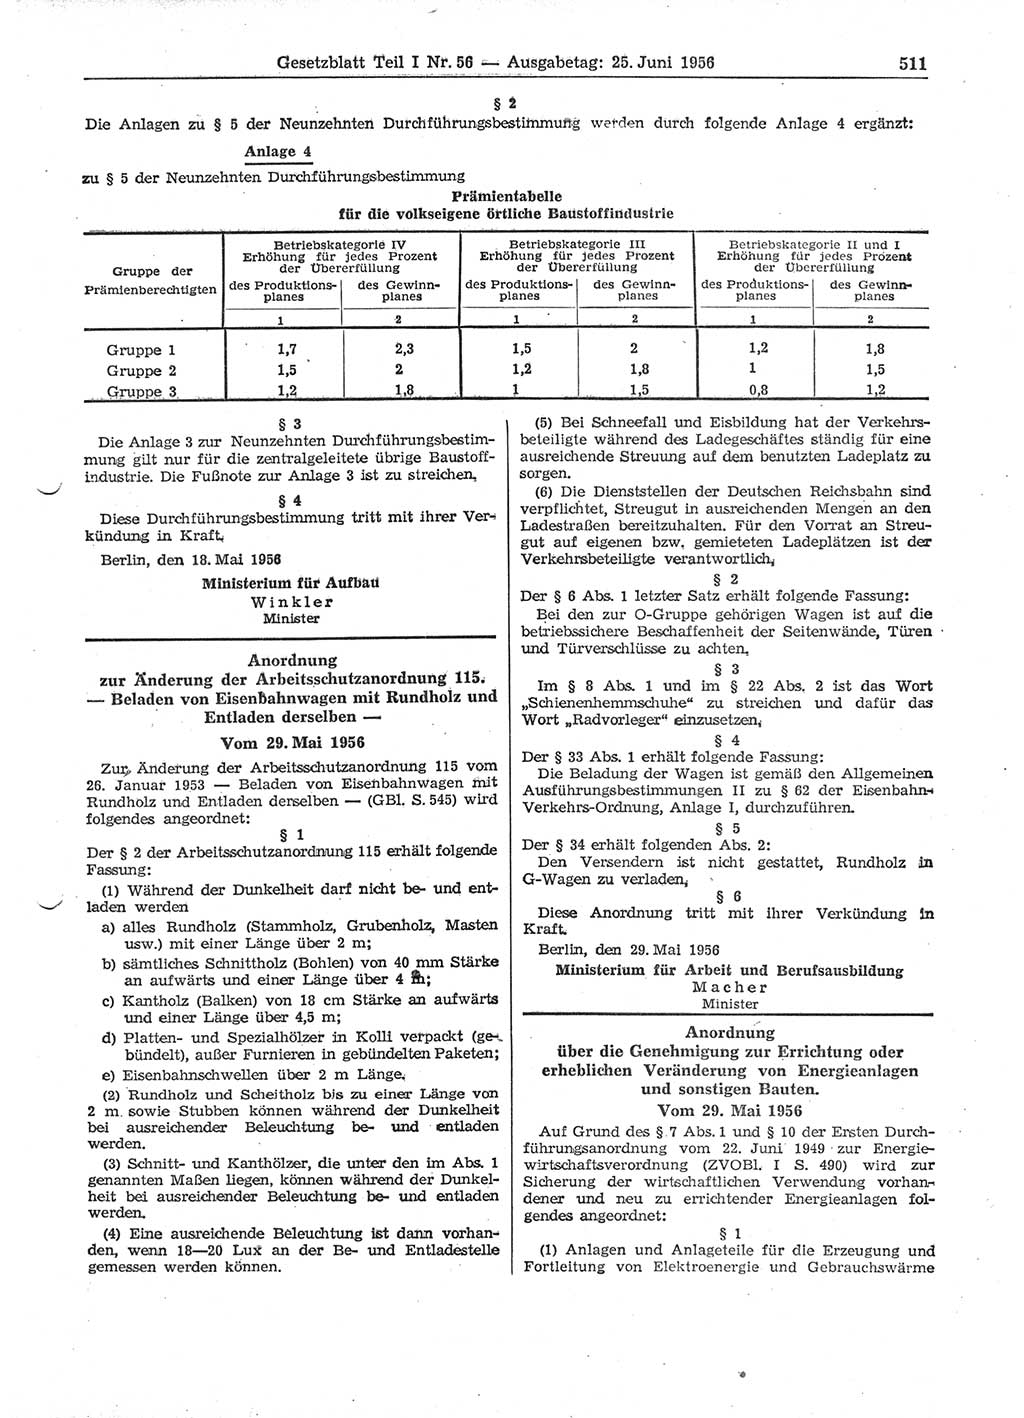 Gesetzblatt (GBl.) der Deutschen Demokratischen Republik (DDR) Teil Ⅰ 1956, Seite 511 (GBl. DDR Ⅰ 1956, S. 511)